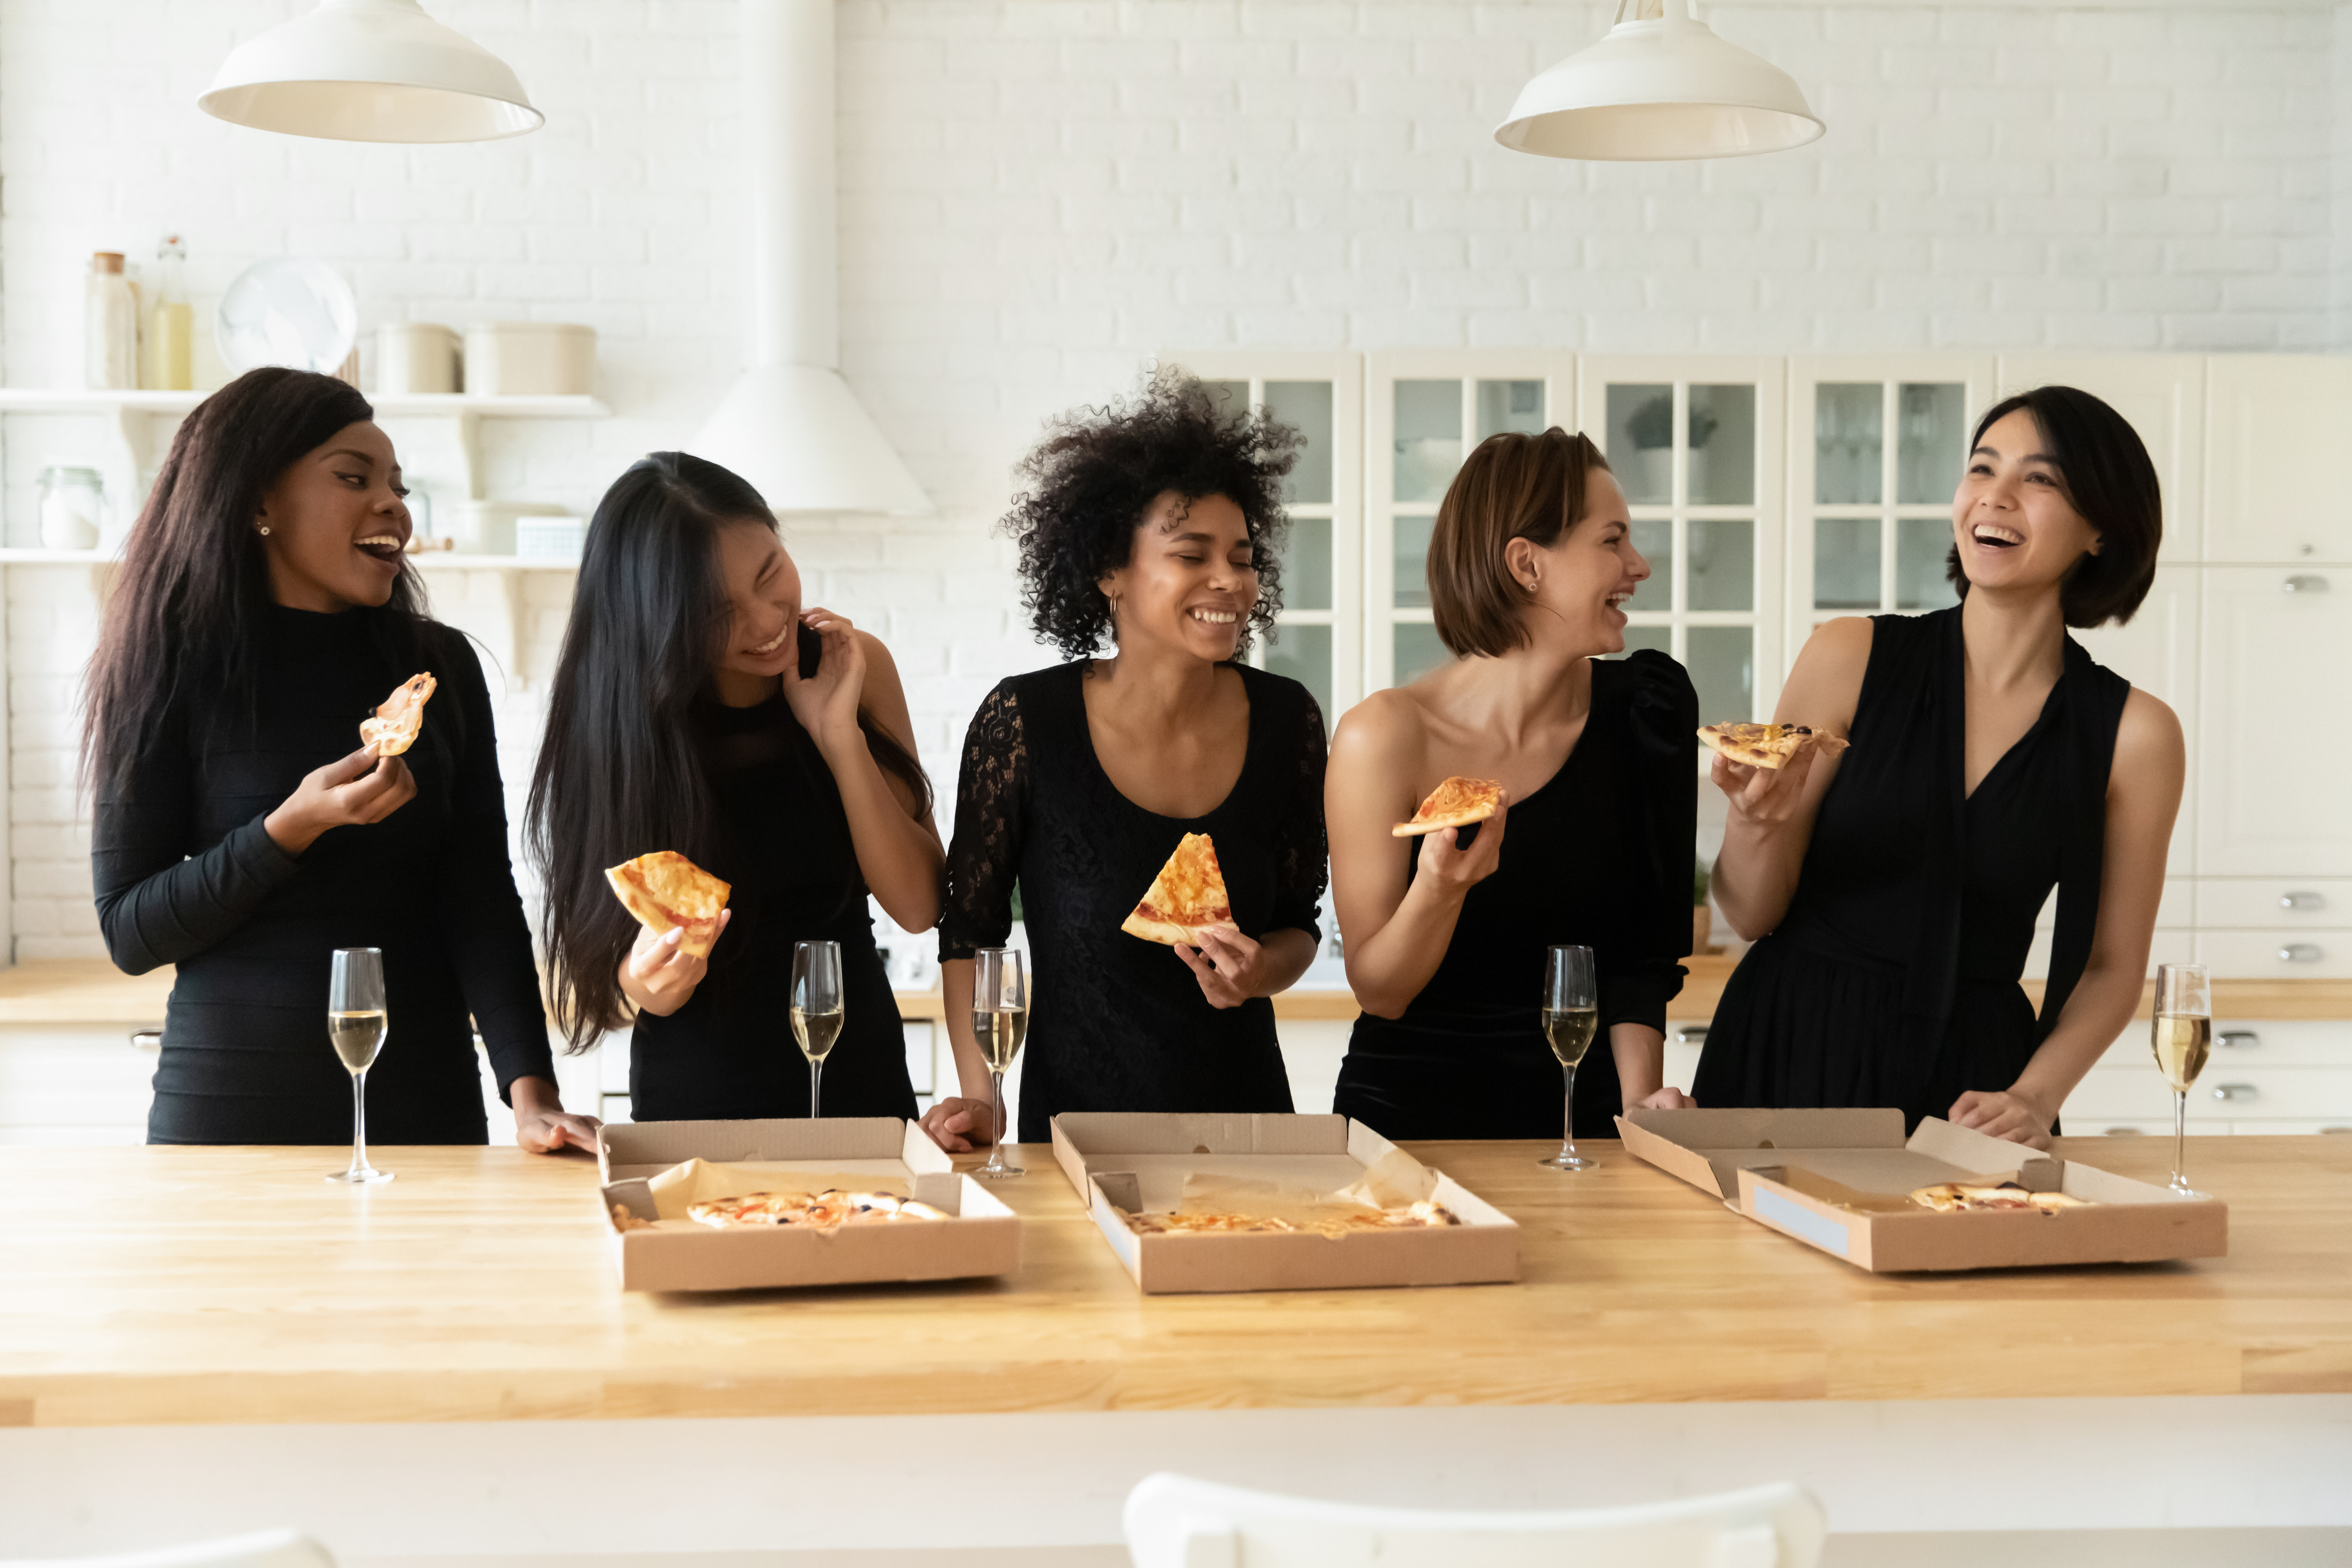 Des femmes vêtues de noir mangent des pizzas et boivent du champagne | Source : Shutterstock